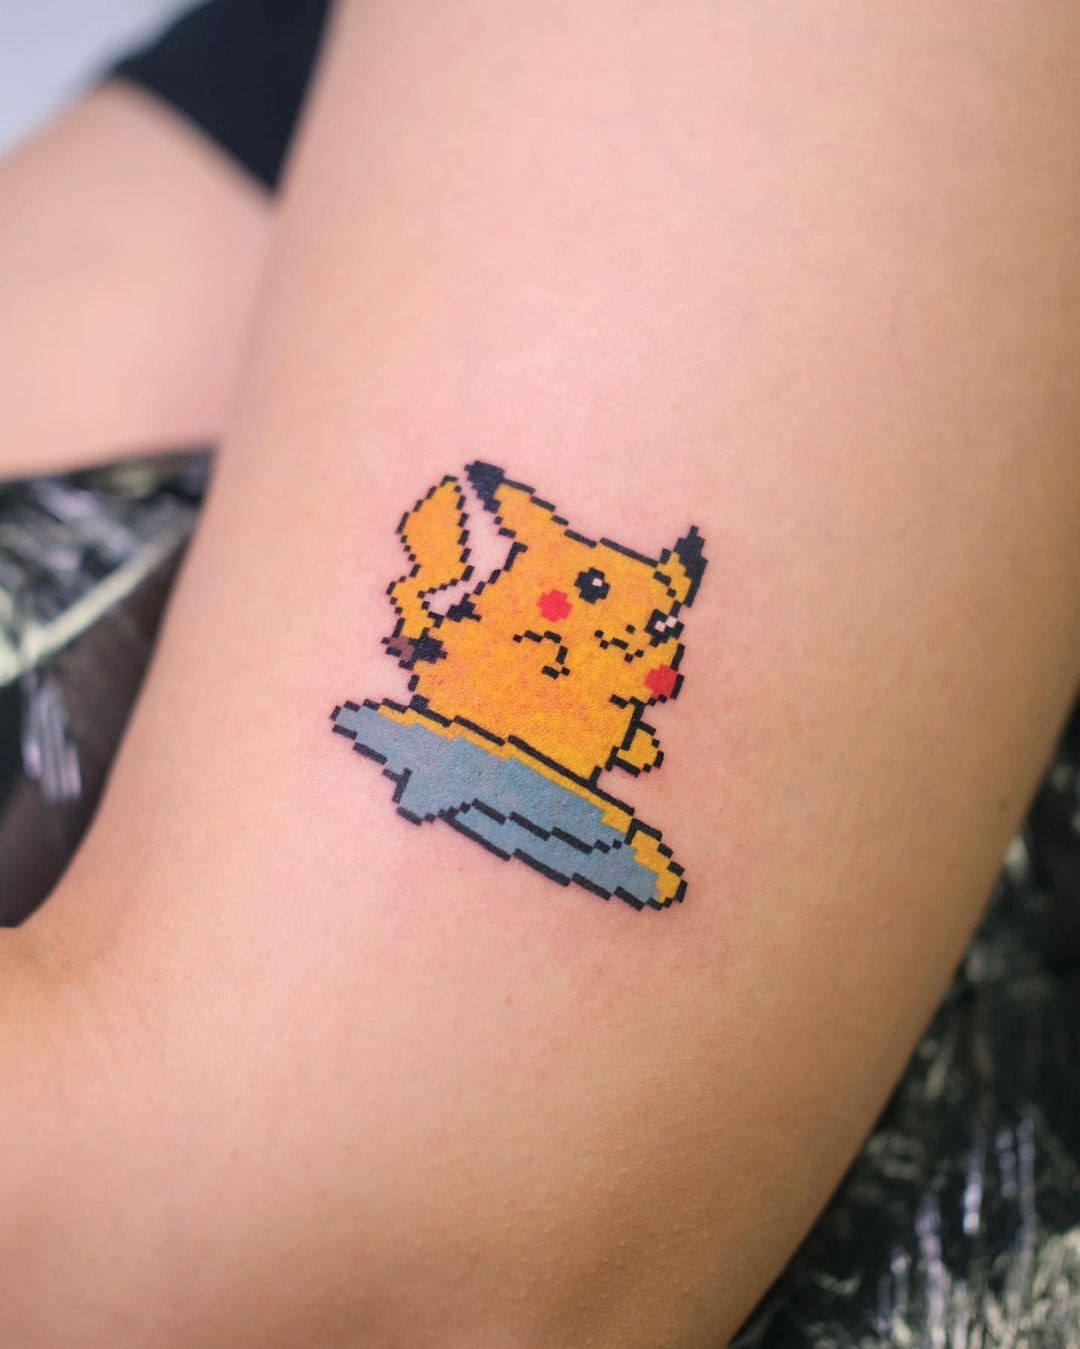 My Pokémon arm tattoos. Done here in Portland, OR. : r/pokemon